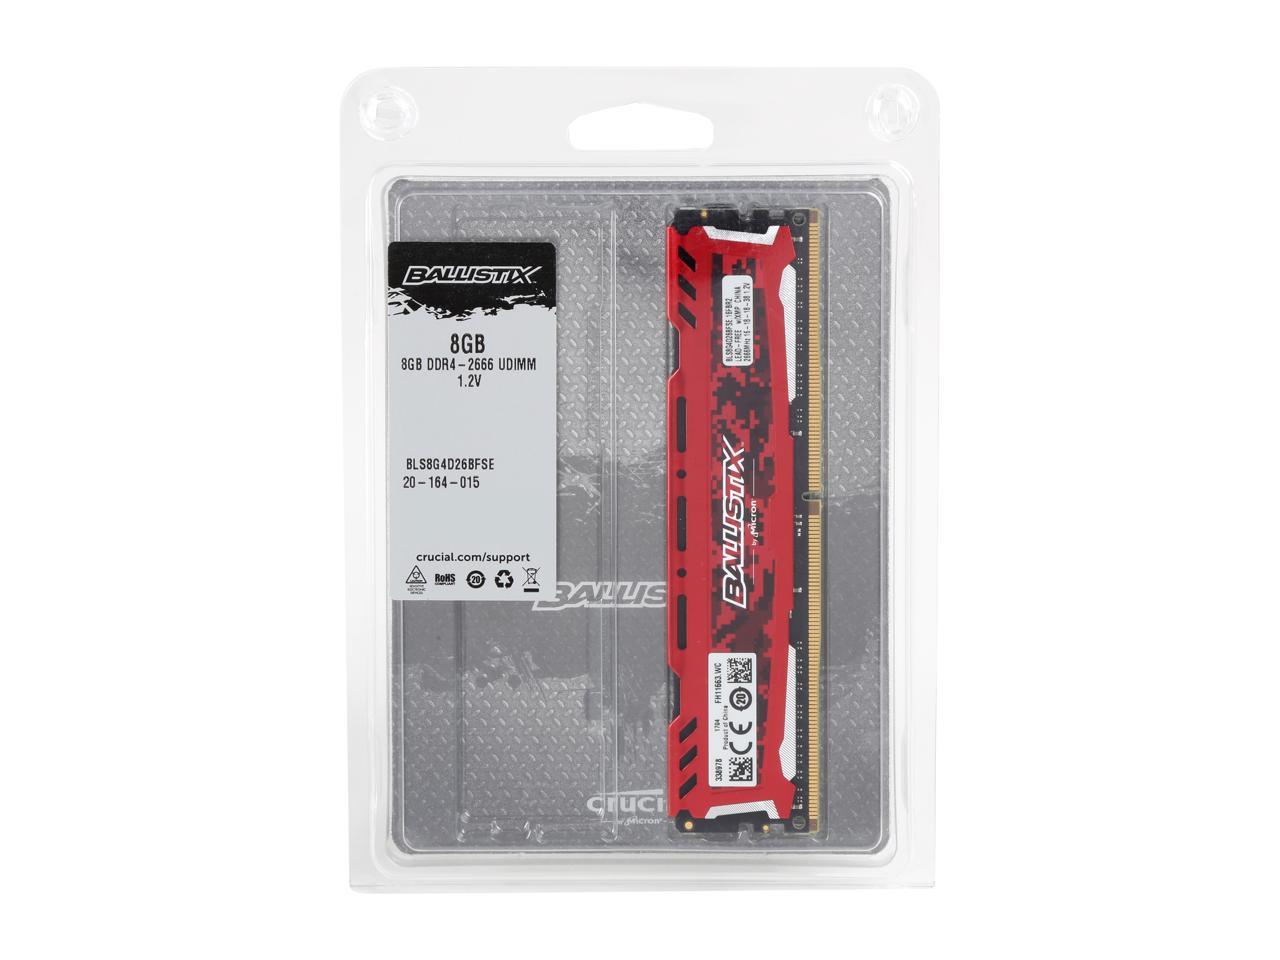 Ballistix Sport LT 8GB Single DDR4 2666 MT/s (PC4-21300) DR x8 DIMM 288-Pin  Memory - BLS8G4D26BFSE (Red)